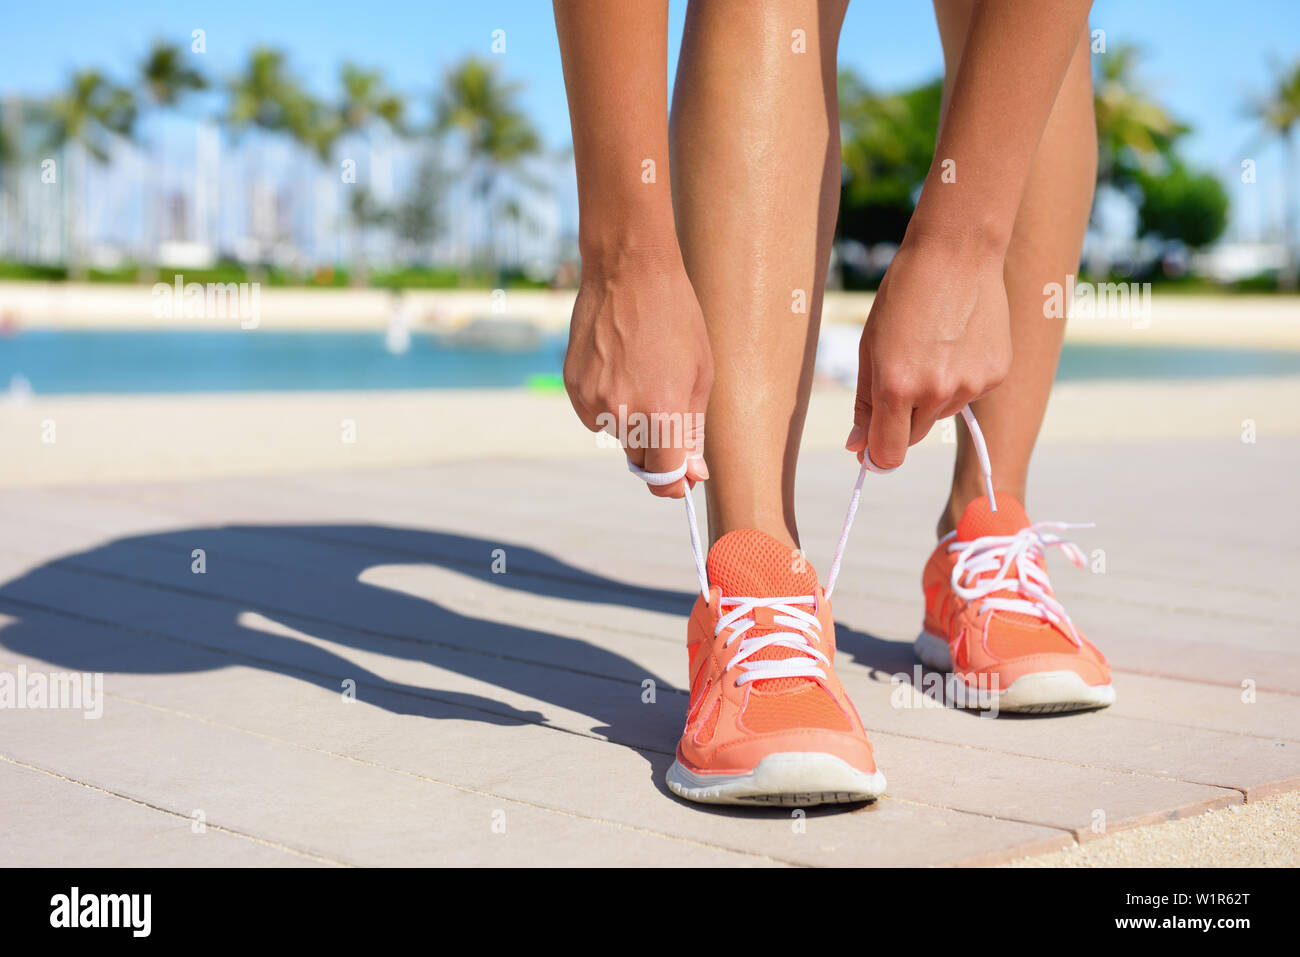 Sport Fitness, Bewegung und Lifestyle Konzept. Runner Frau schnürung Schuhe Schnürsenkel binden Trainer vor dem Joggen auf einem Lauf. Passen gesunden weiblichen Fuß und Schuh. Stockfoto